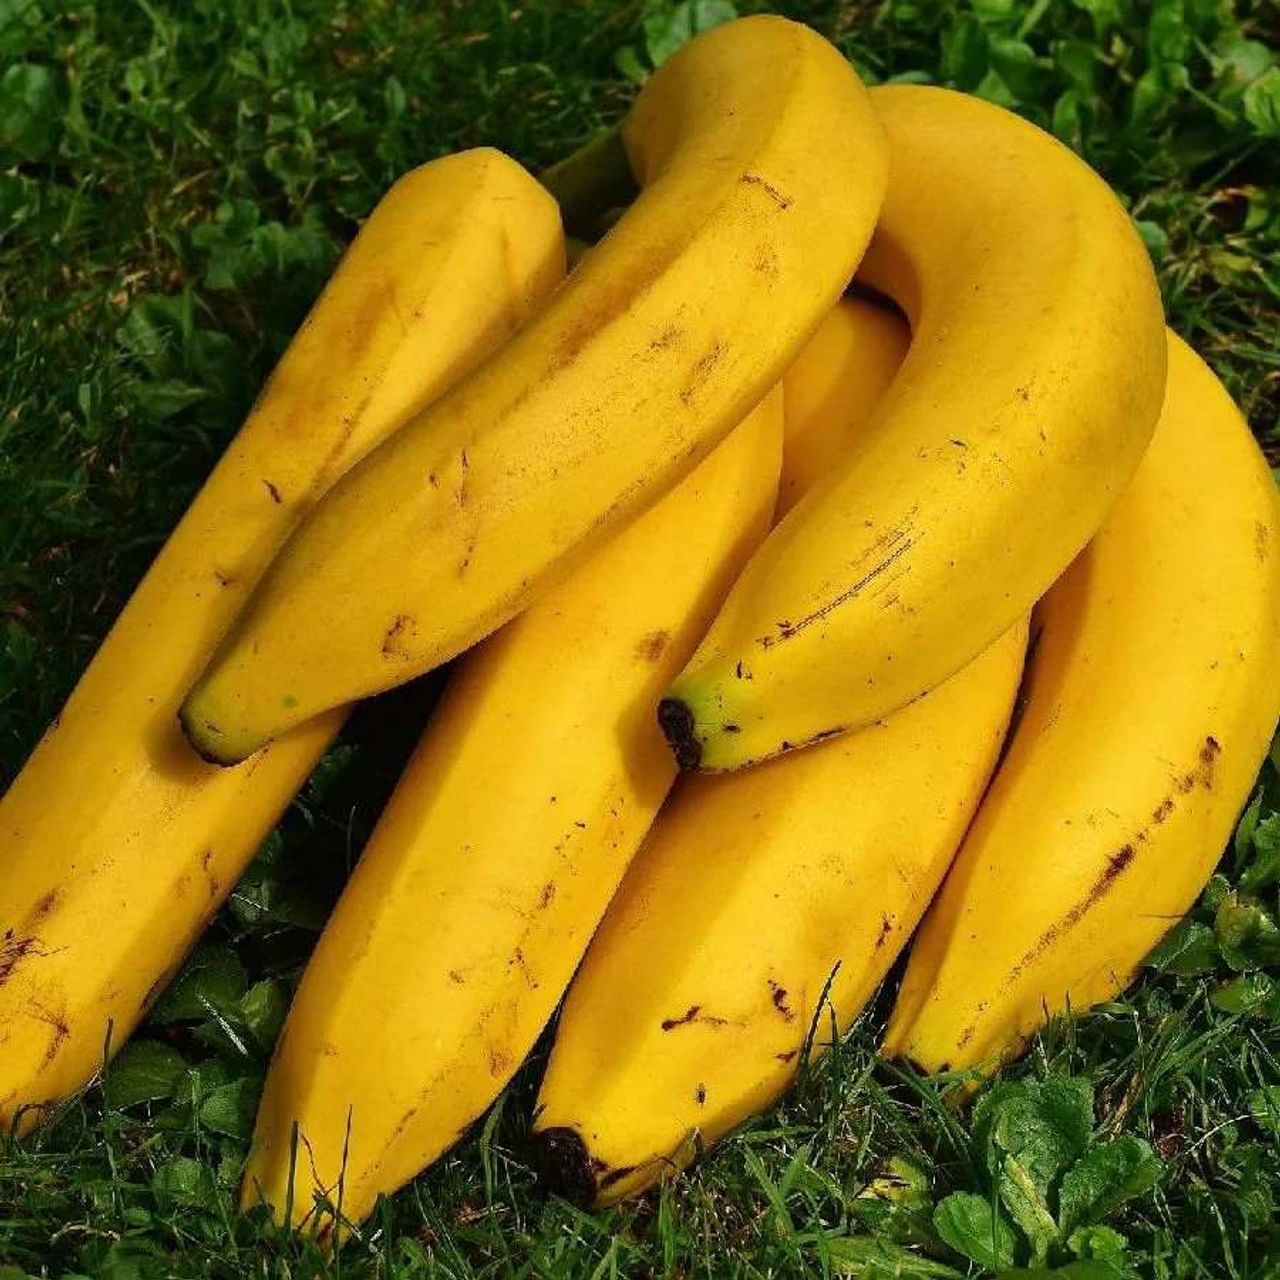 કેળું: સ્વાસ્થ્ય માટે ખૂબ જ ફાયદાકારક, કેળાથી દાંતને સ્વસ્થ અને ચમકદાર બનાવી શકાય છે. આ માટે કેળાને આહારનો ભાગ બનાવો, કારણ કે તેમાં હાજર મેગ્નેશિયમ, કેલ્શિયમ અને મેંગેનીઝ દાંત પરની ગંદકીને દૂર કરે છે. (ફોટો: Pixabay)